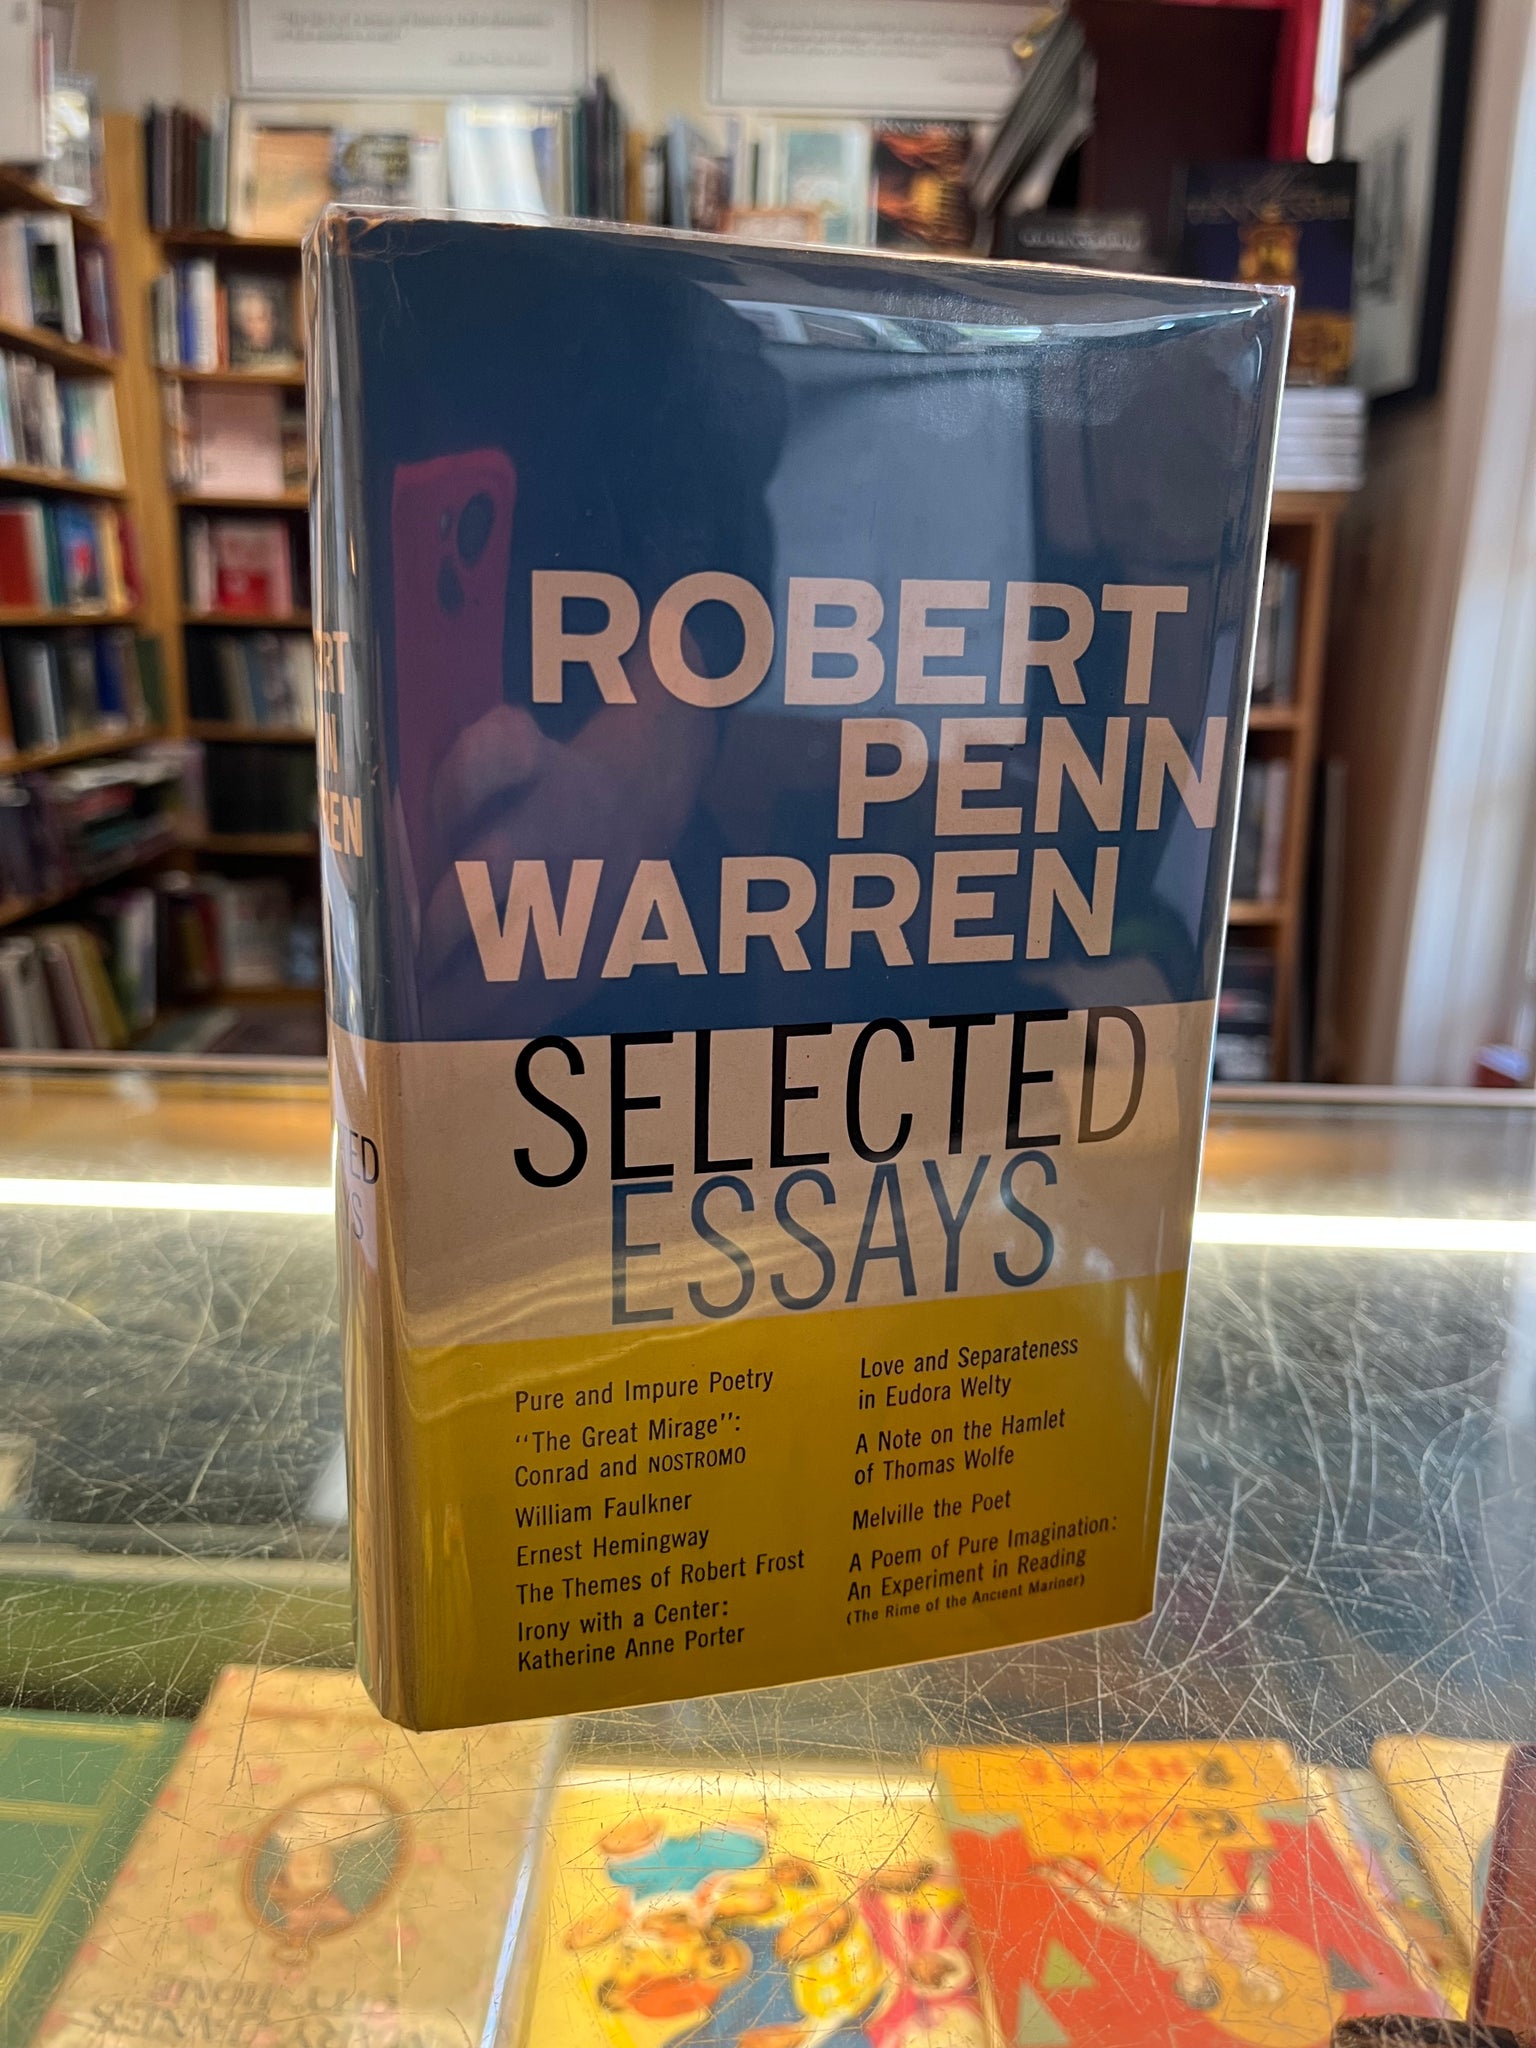 Robert Penn Warren Selected Essays - Signed First Edition